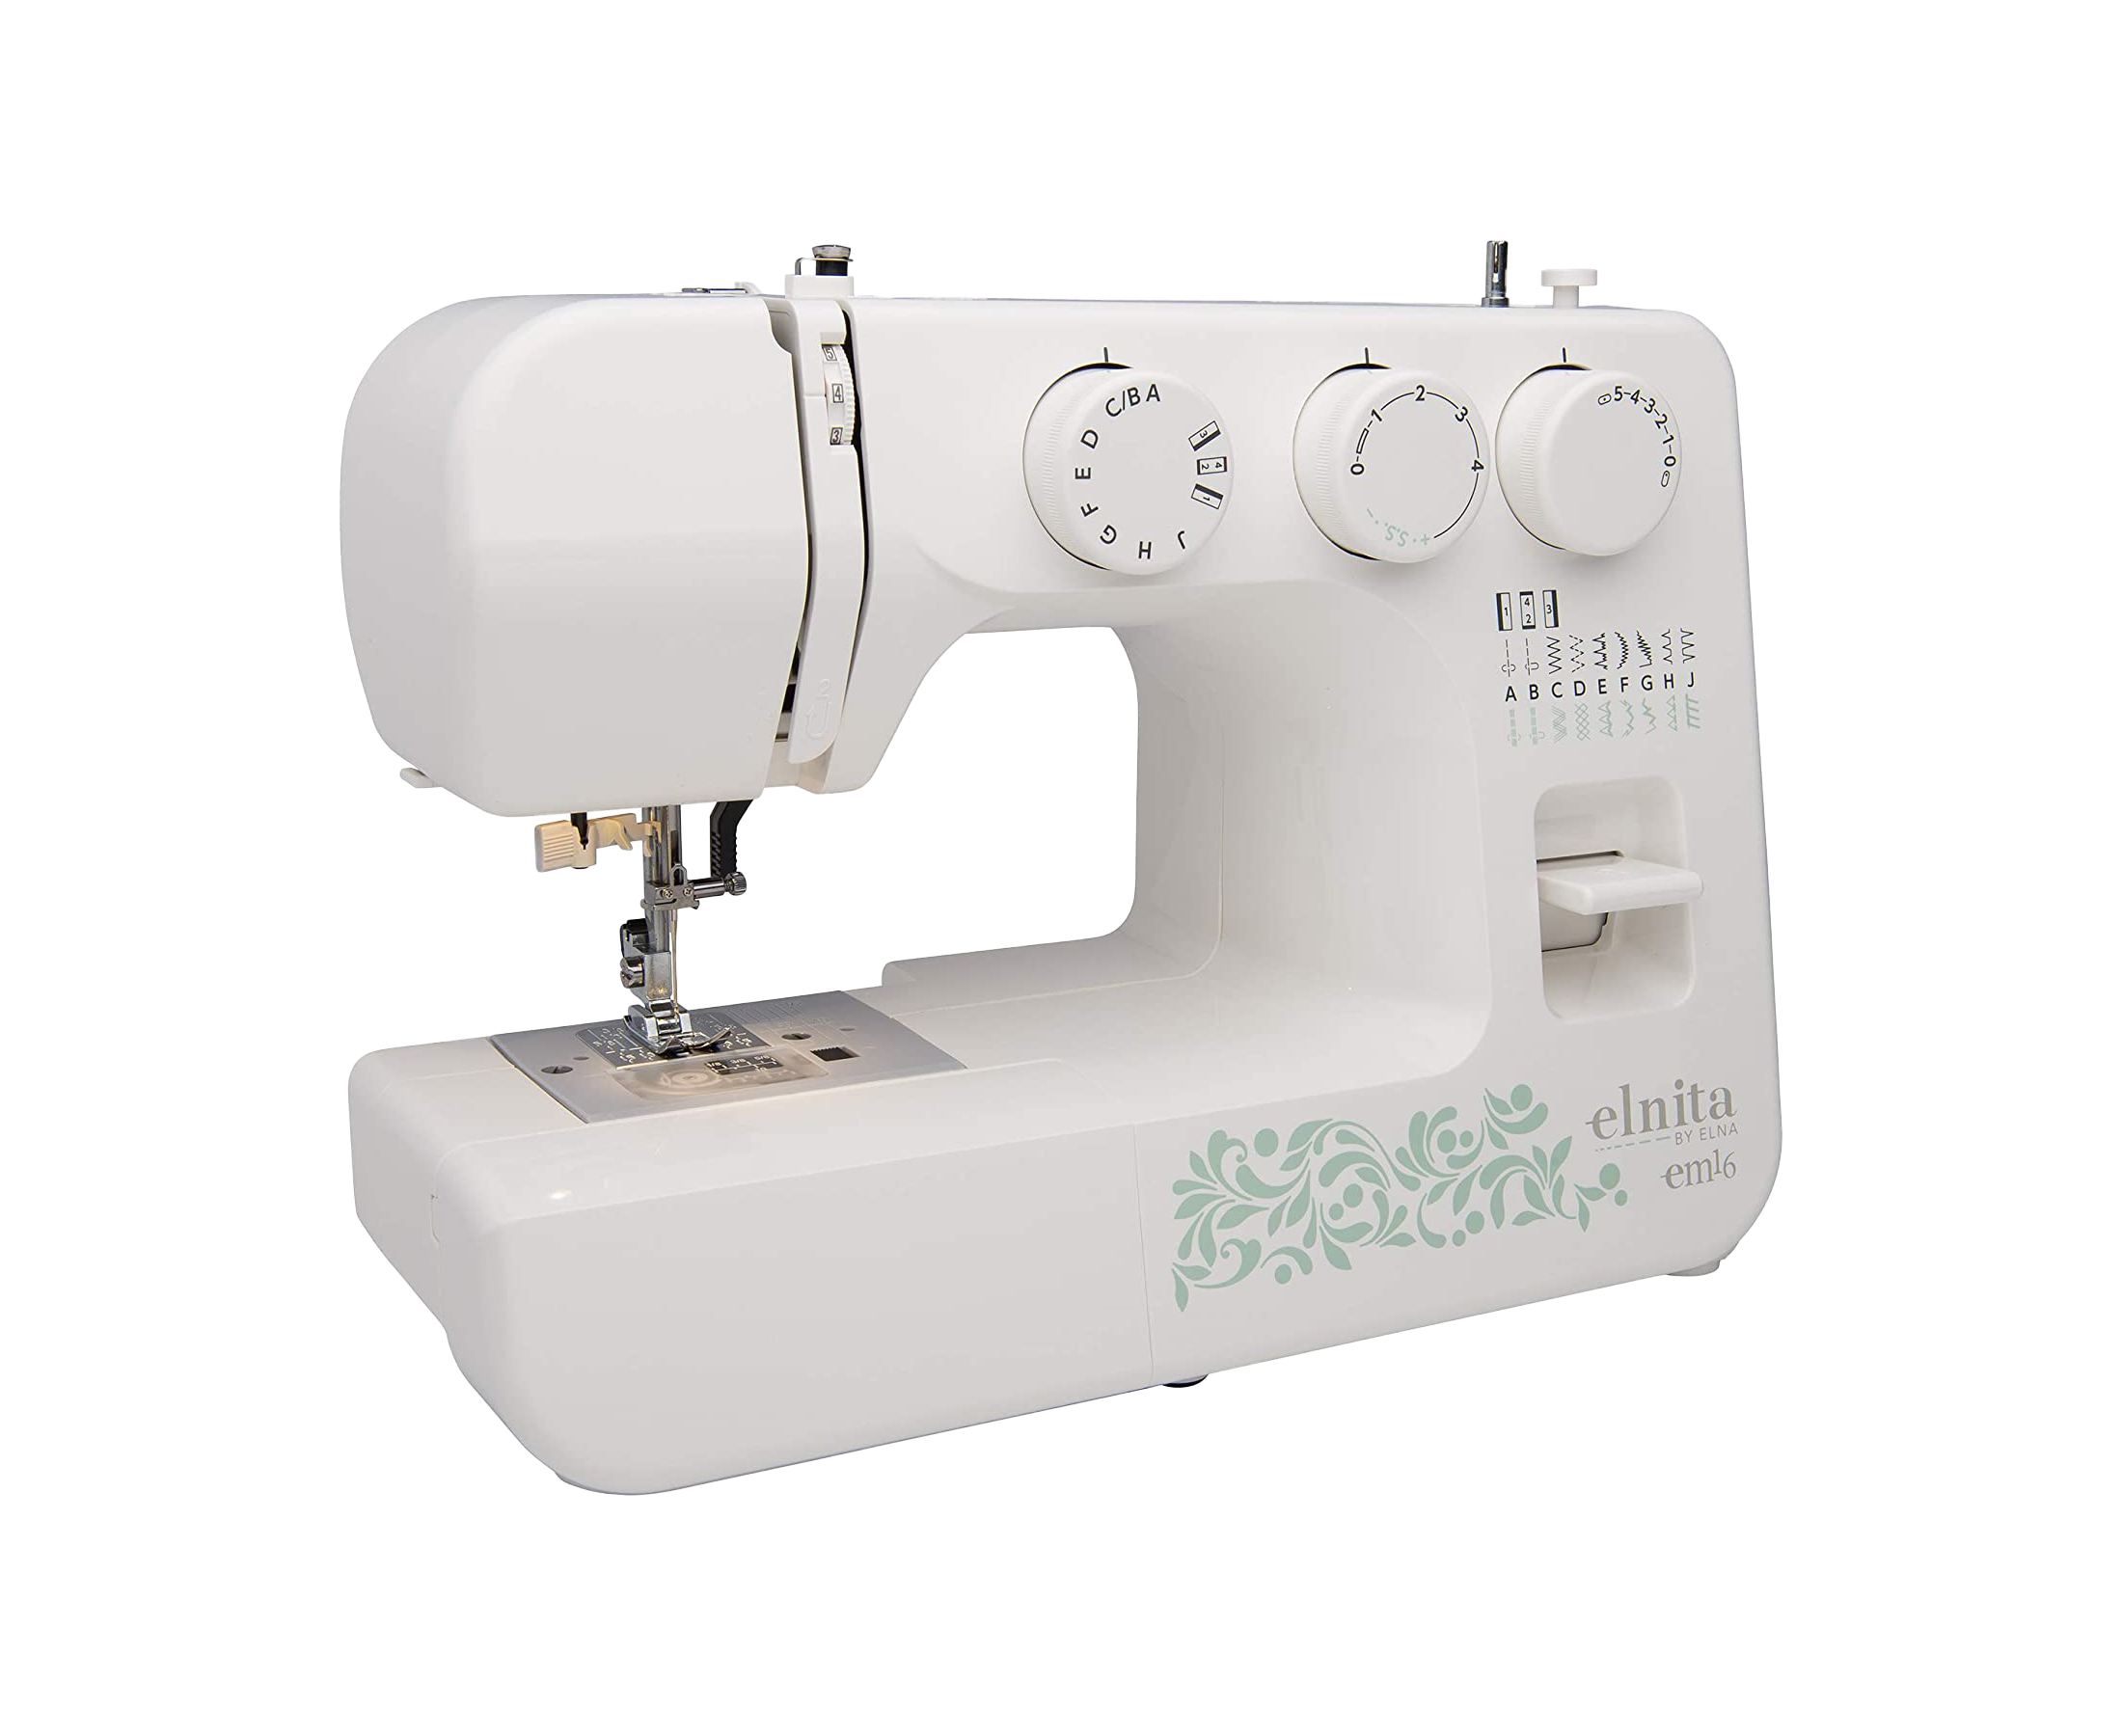 elna Elnita EM16 Sewing Machine for Sale at World Weidner